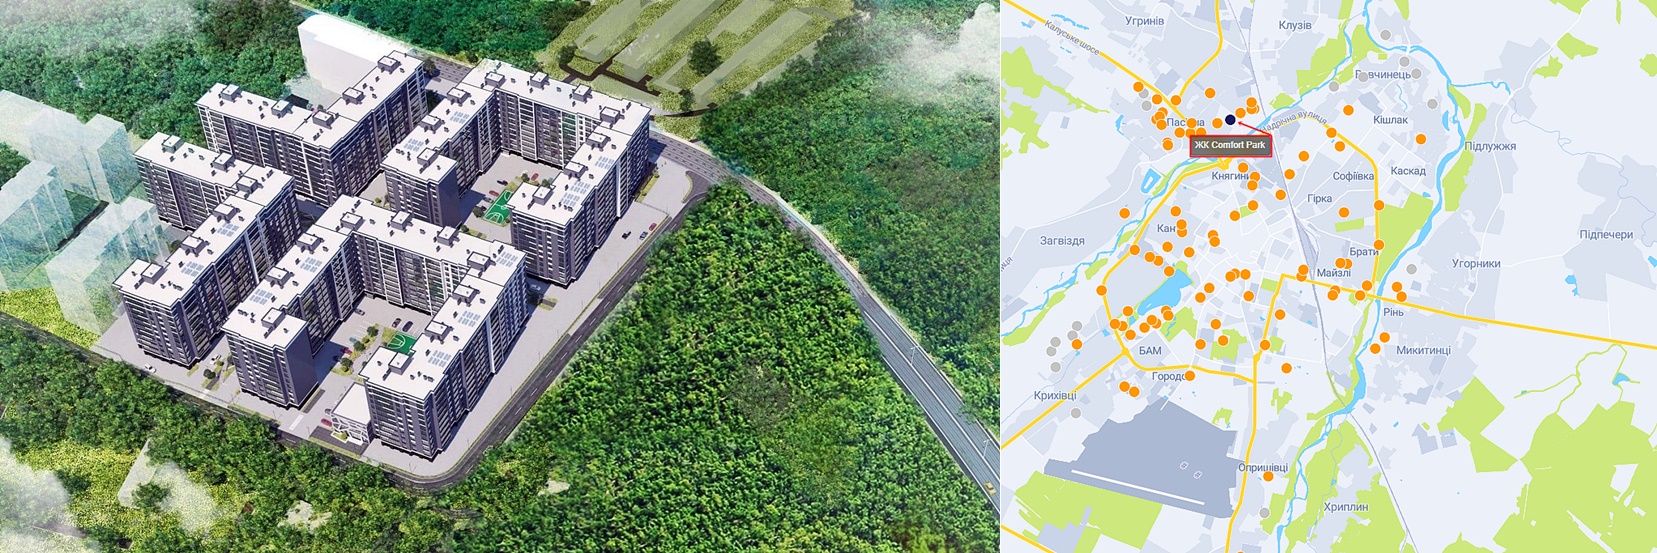 ЖК Comfort Park візуалізація і на карті